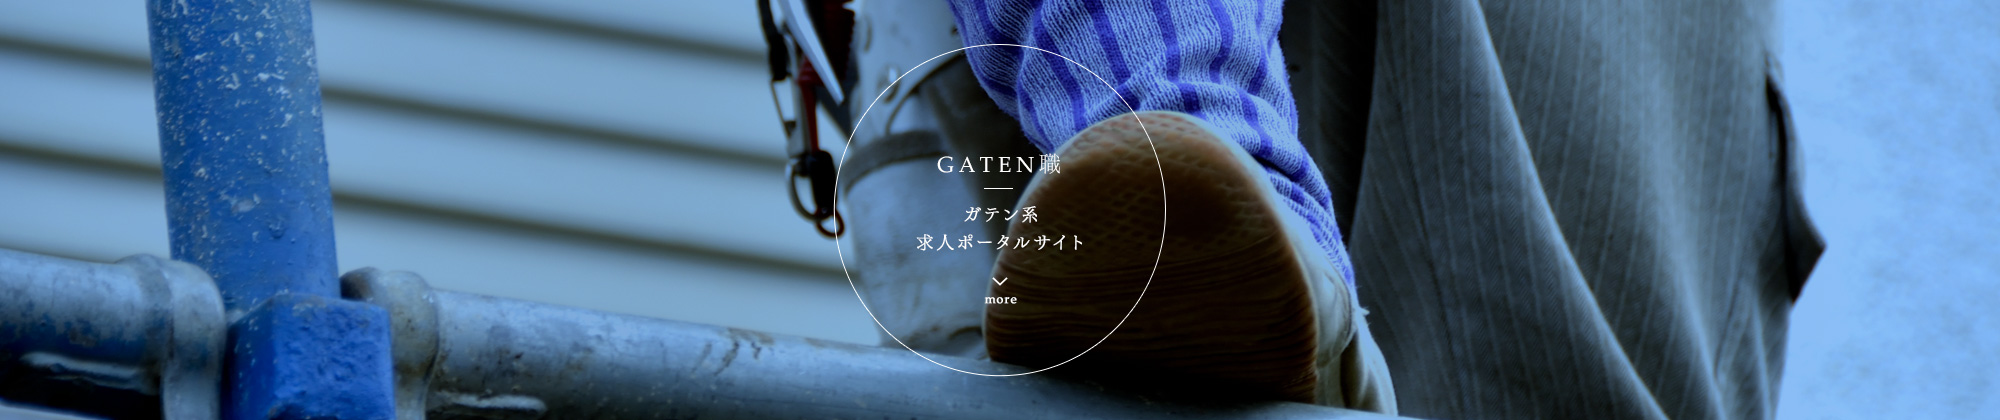 gaten_bnr